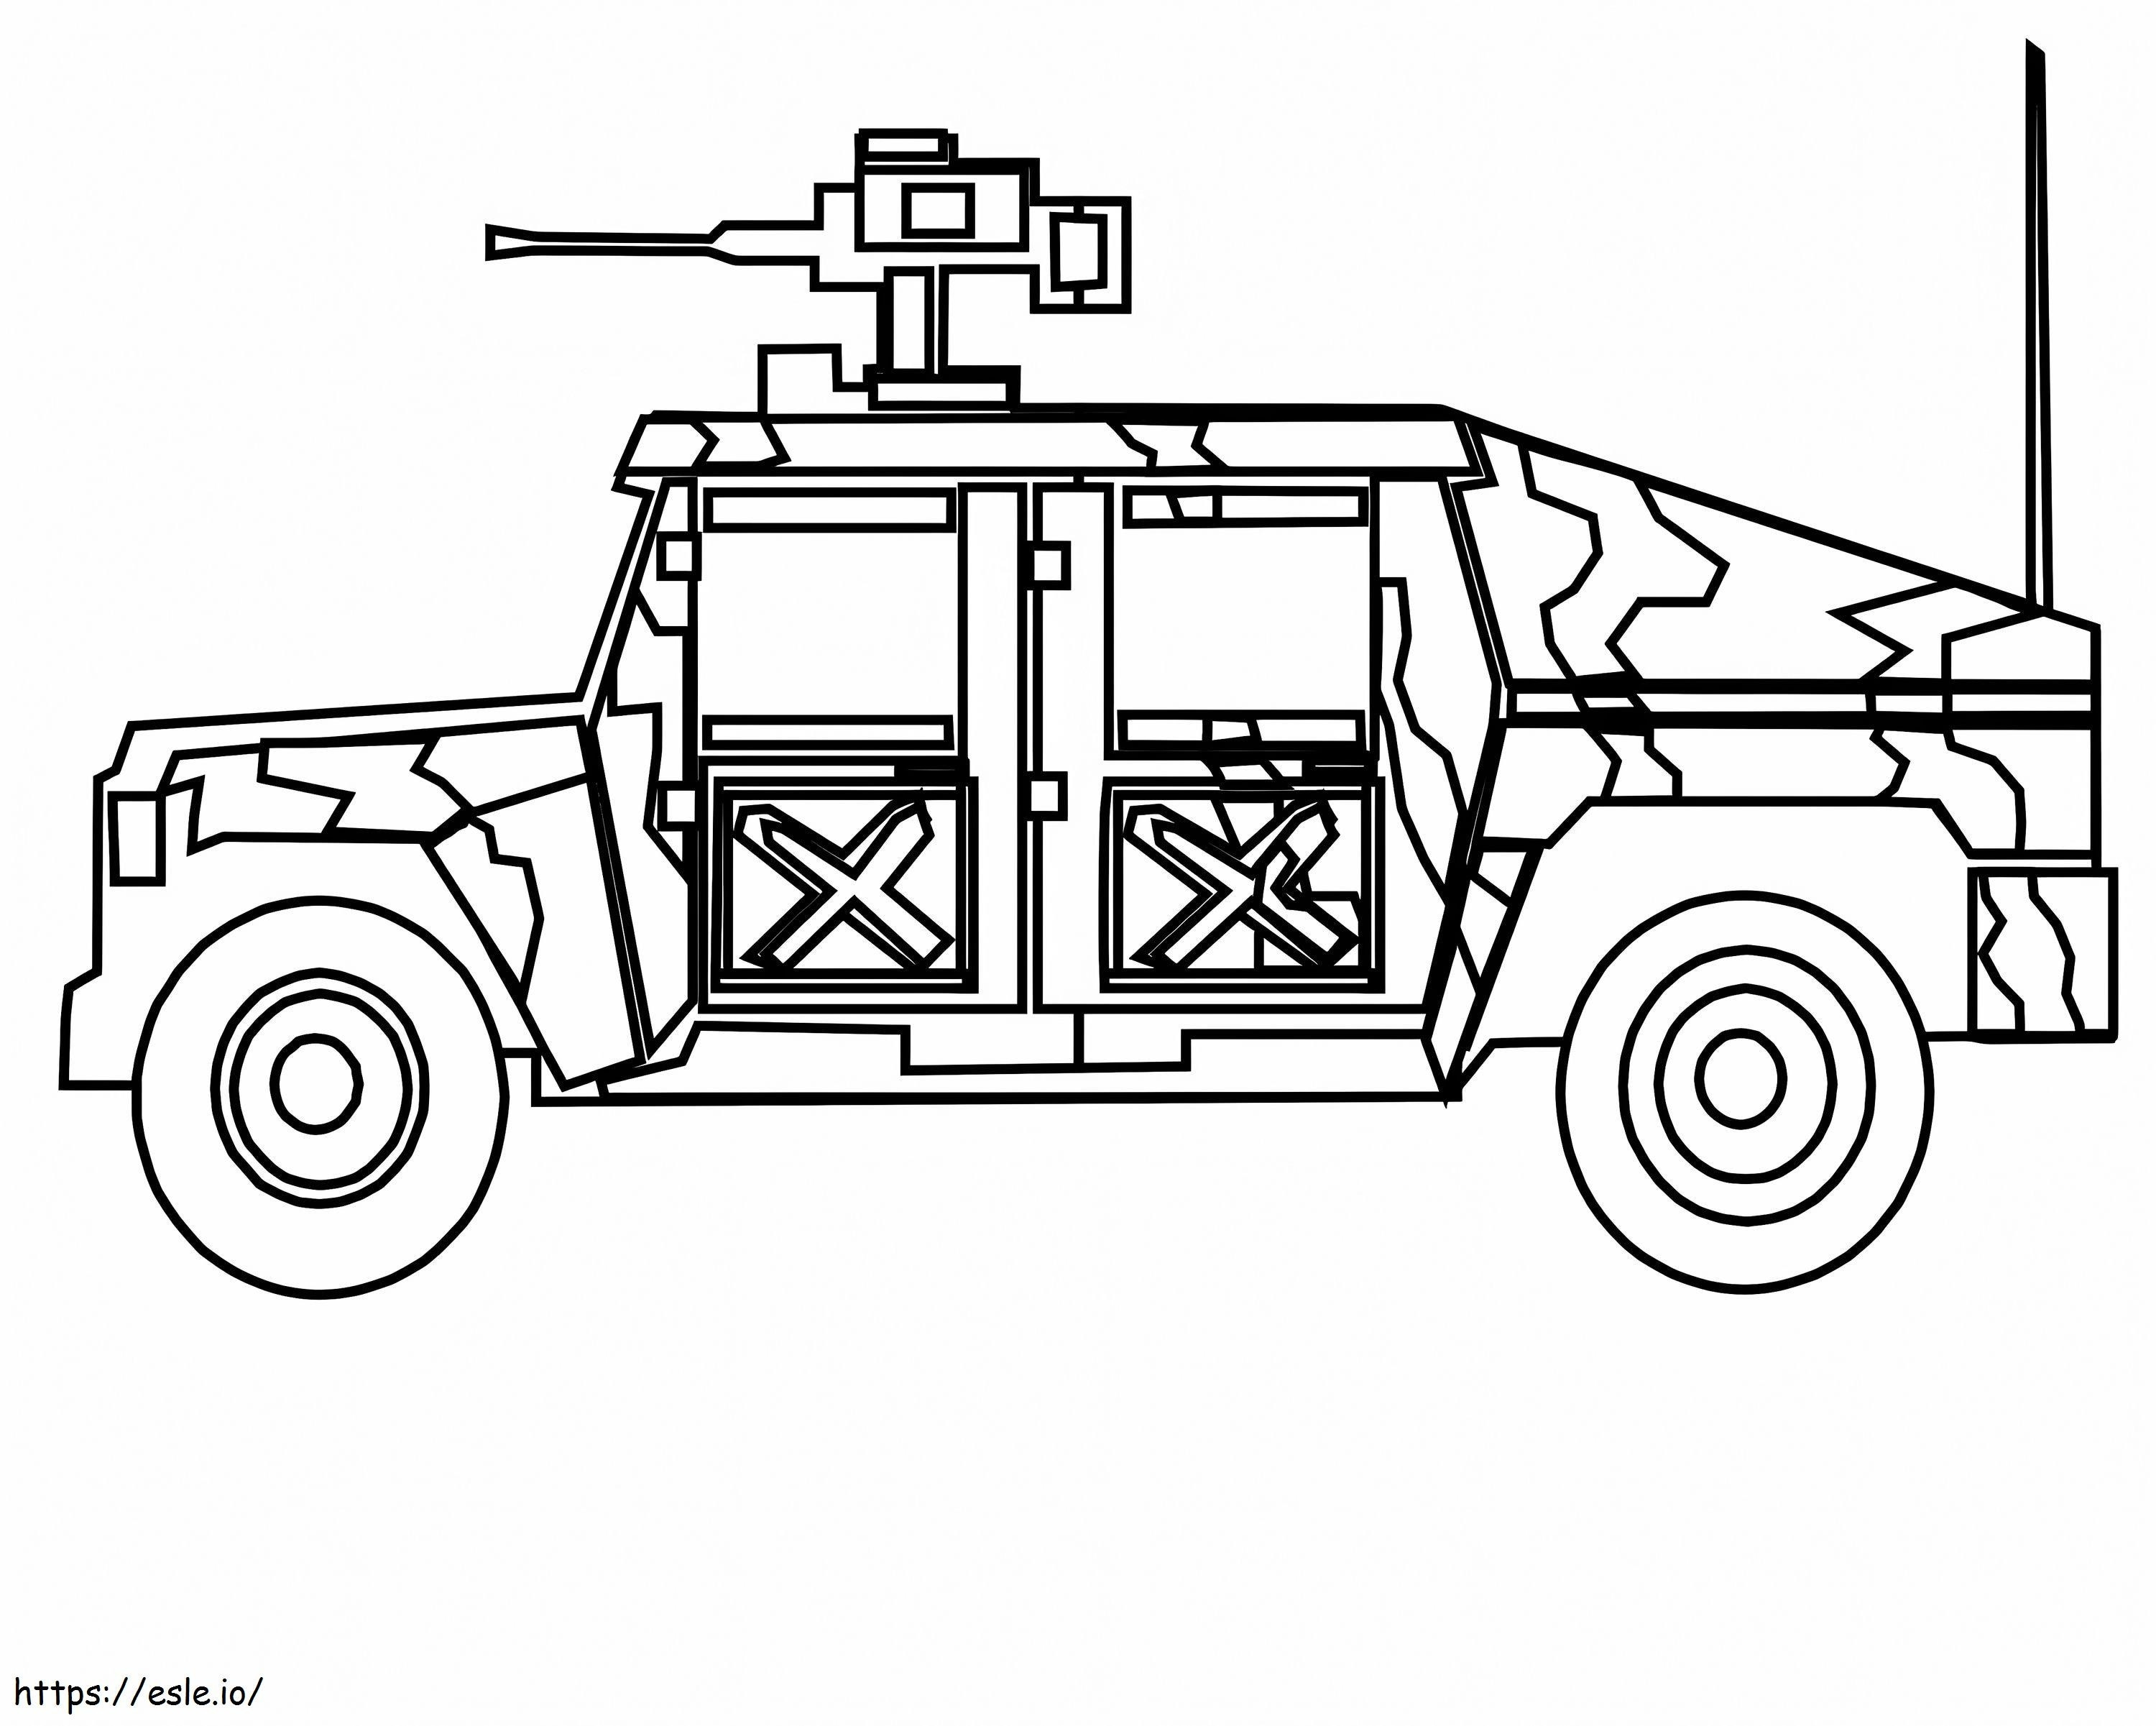 Coloriage 1544230319 Feuilles de transport de camions militaires étranges Véhicules Images à imprimer dessin